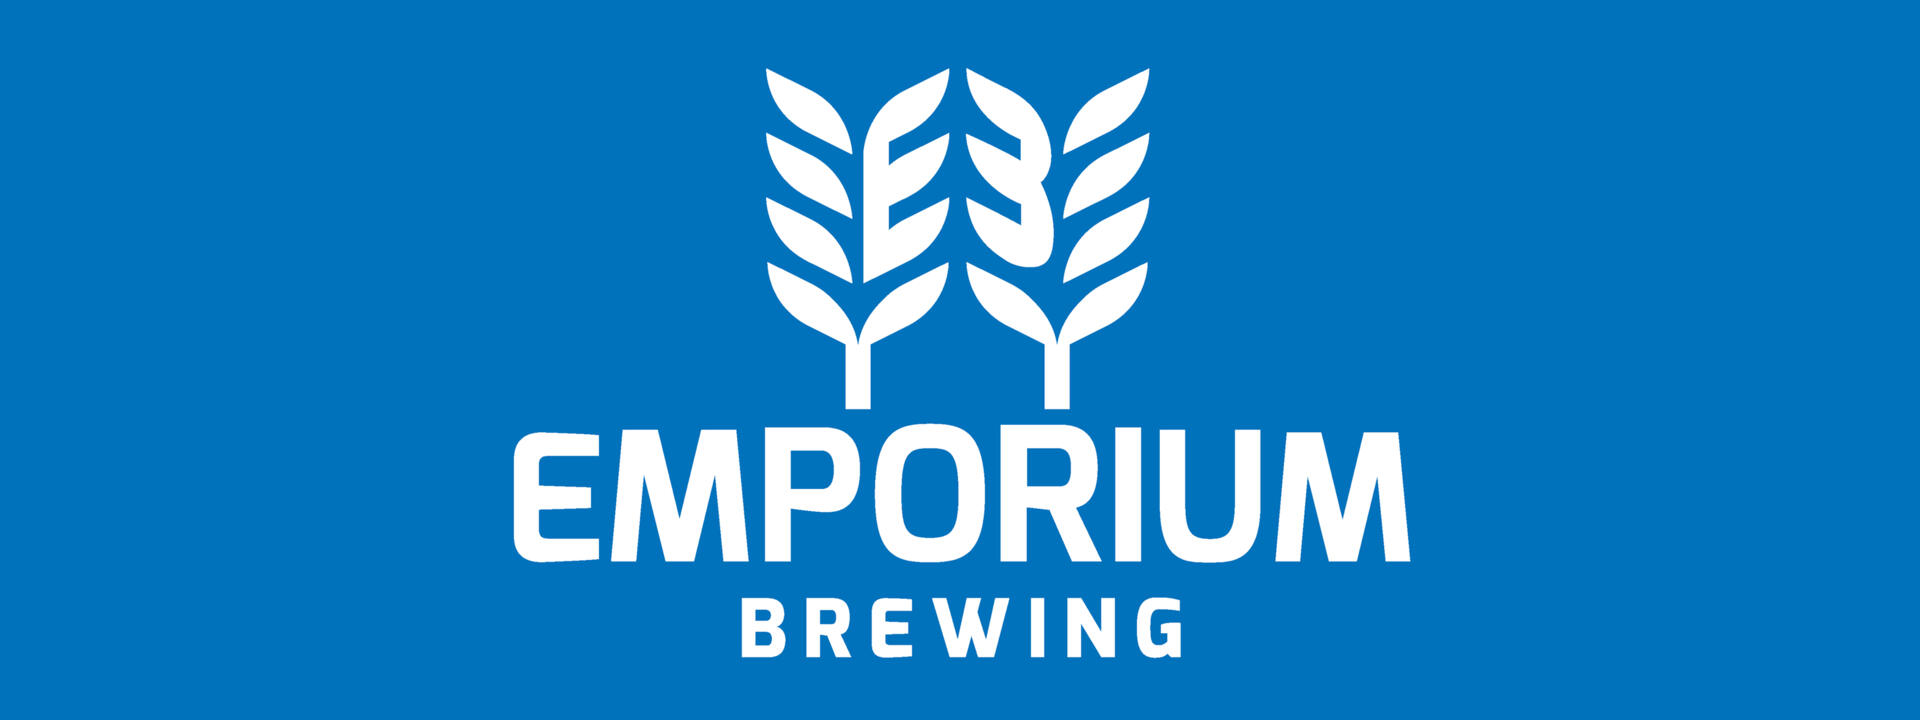 Emporium Logo on blue big background.jpg